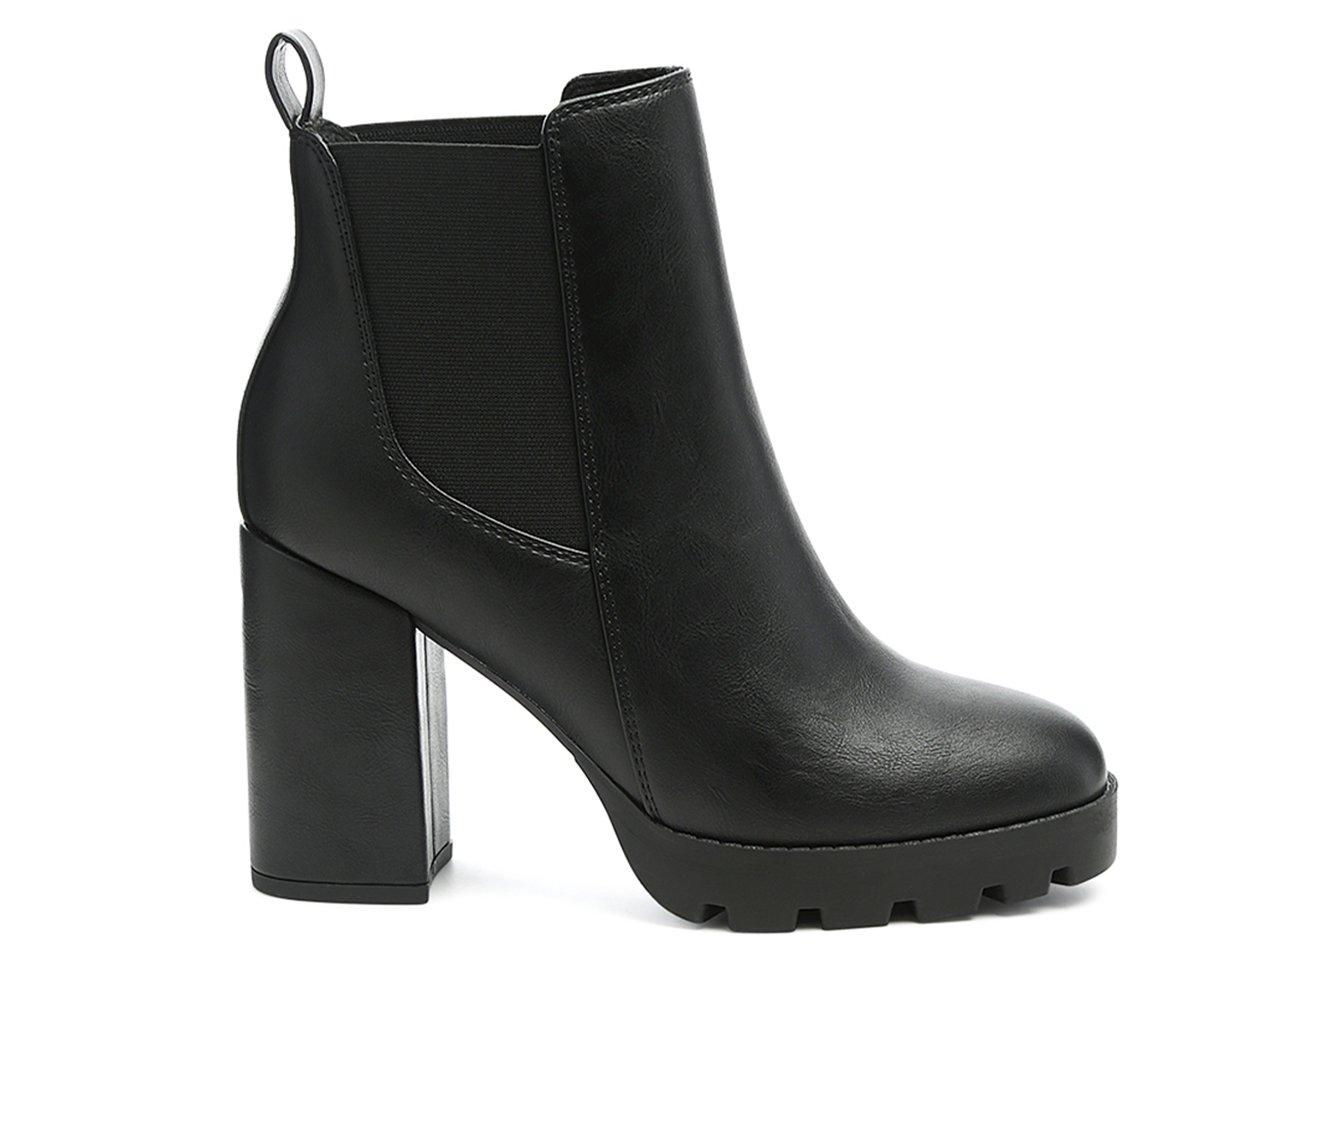 women’s dress boots high heel